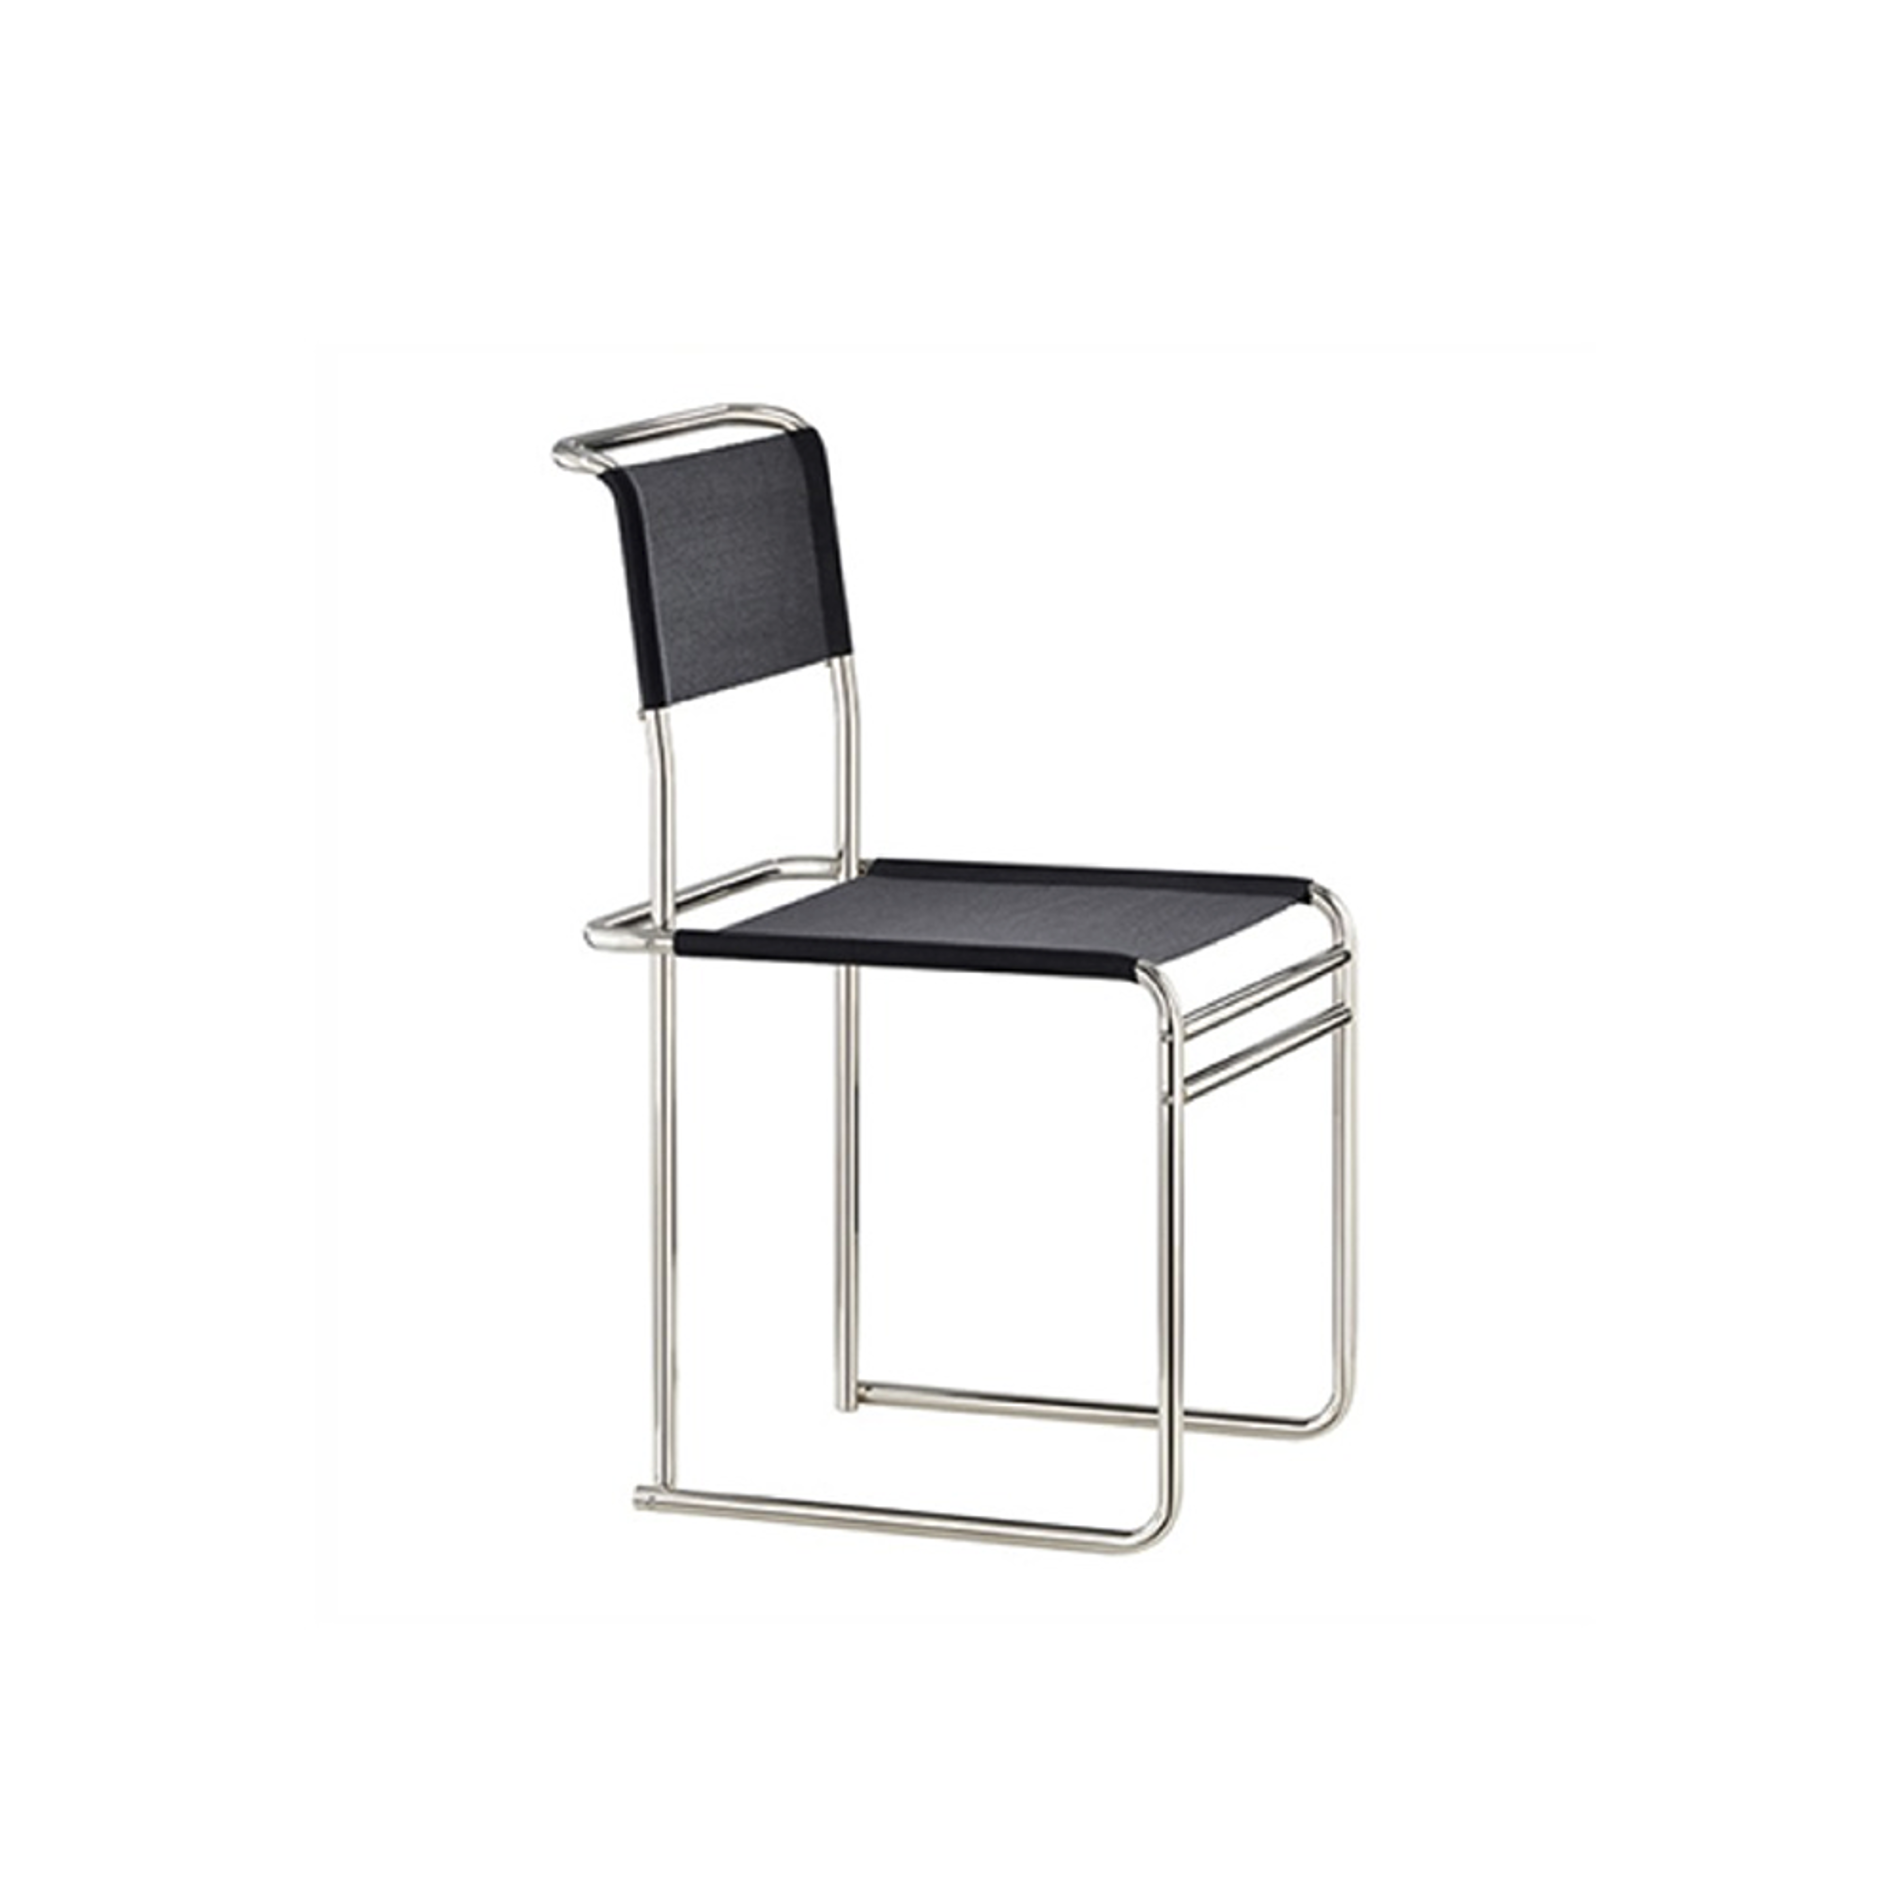 B40 Breuer Chair - Bauhaus Strap / Black